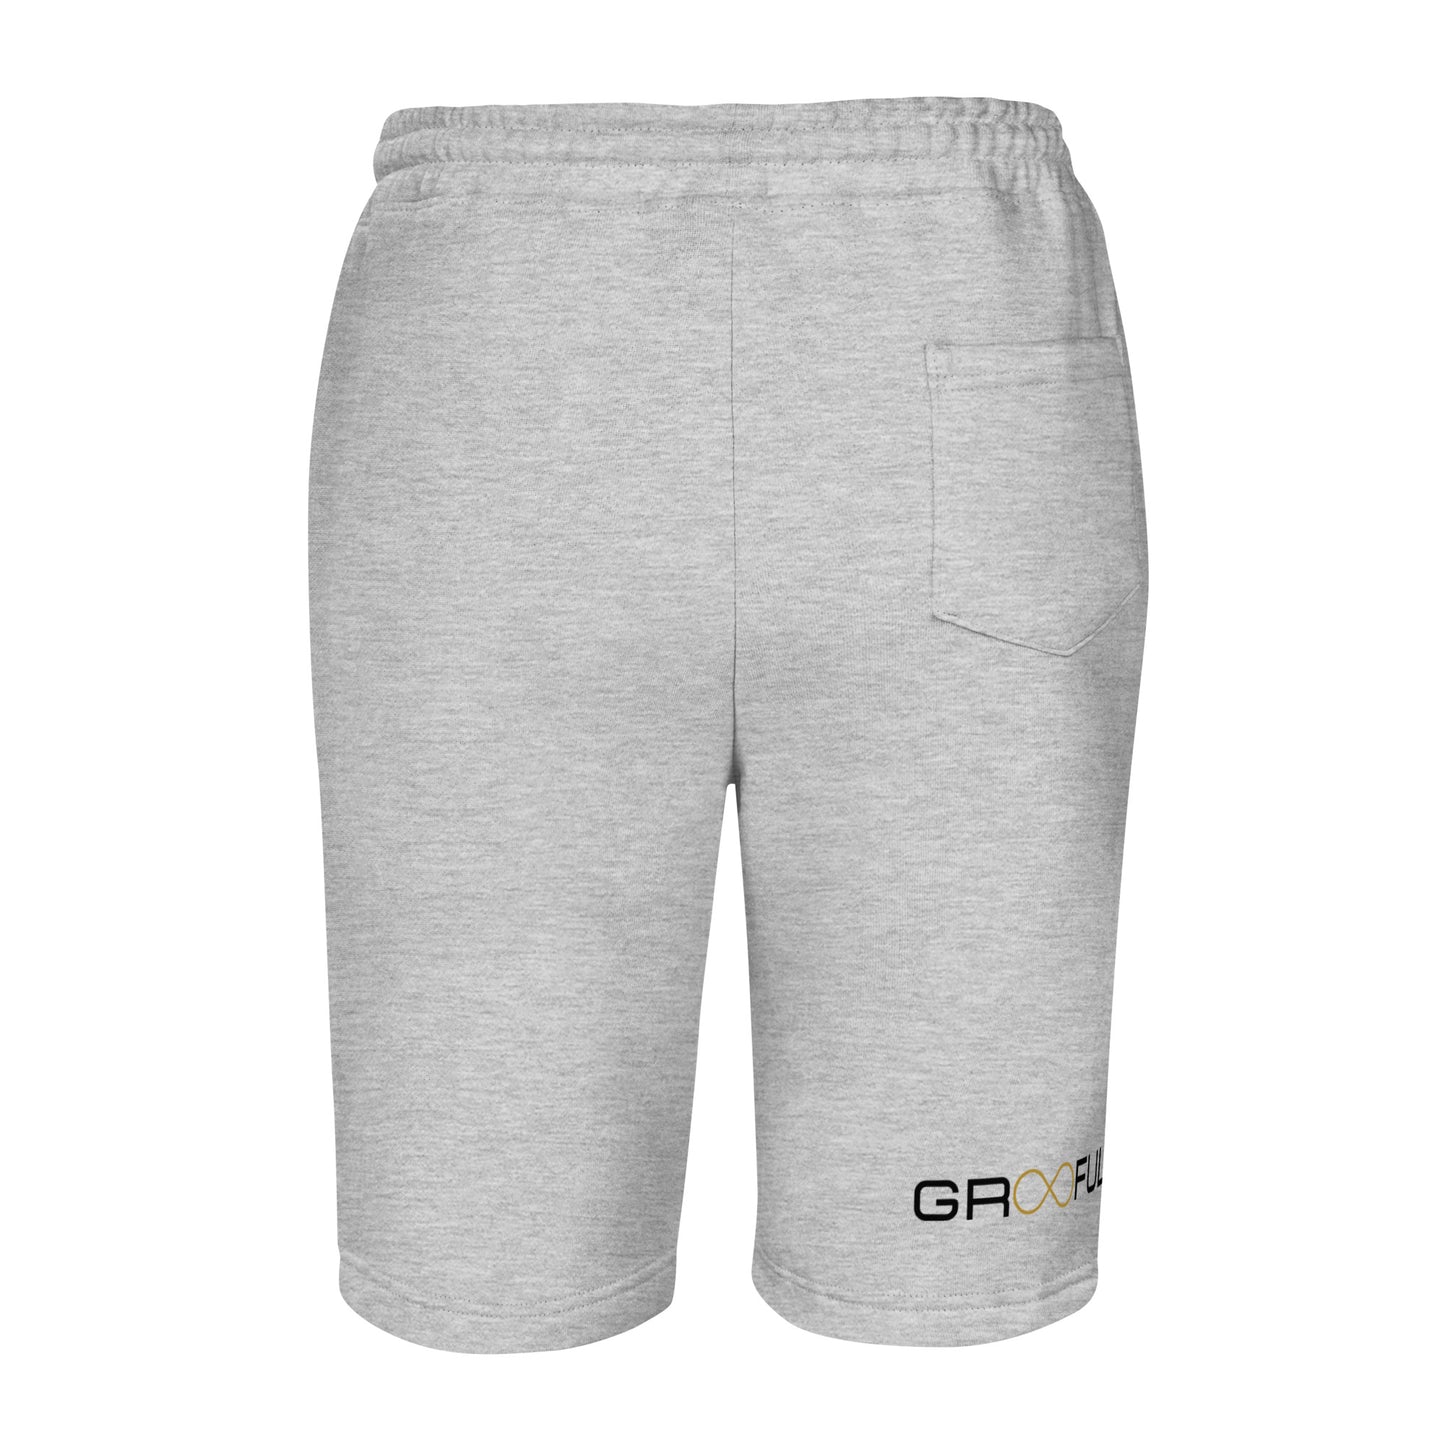 GR8FUL fleece shorts